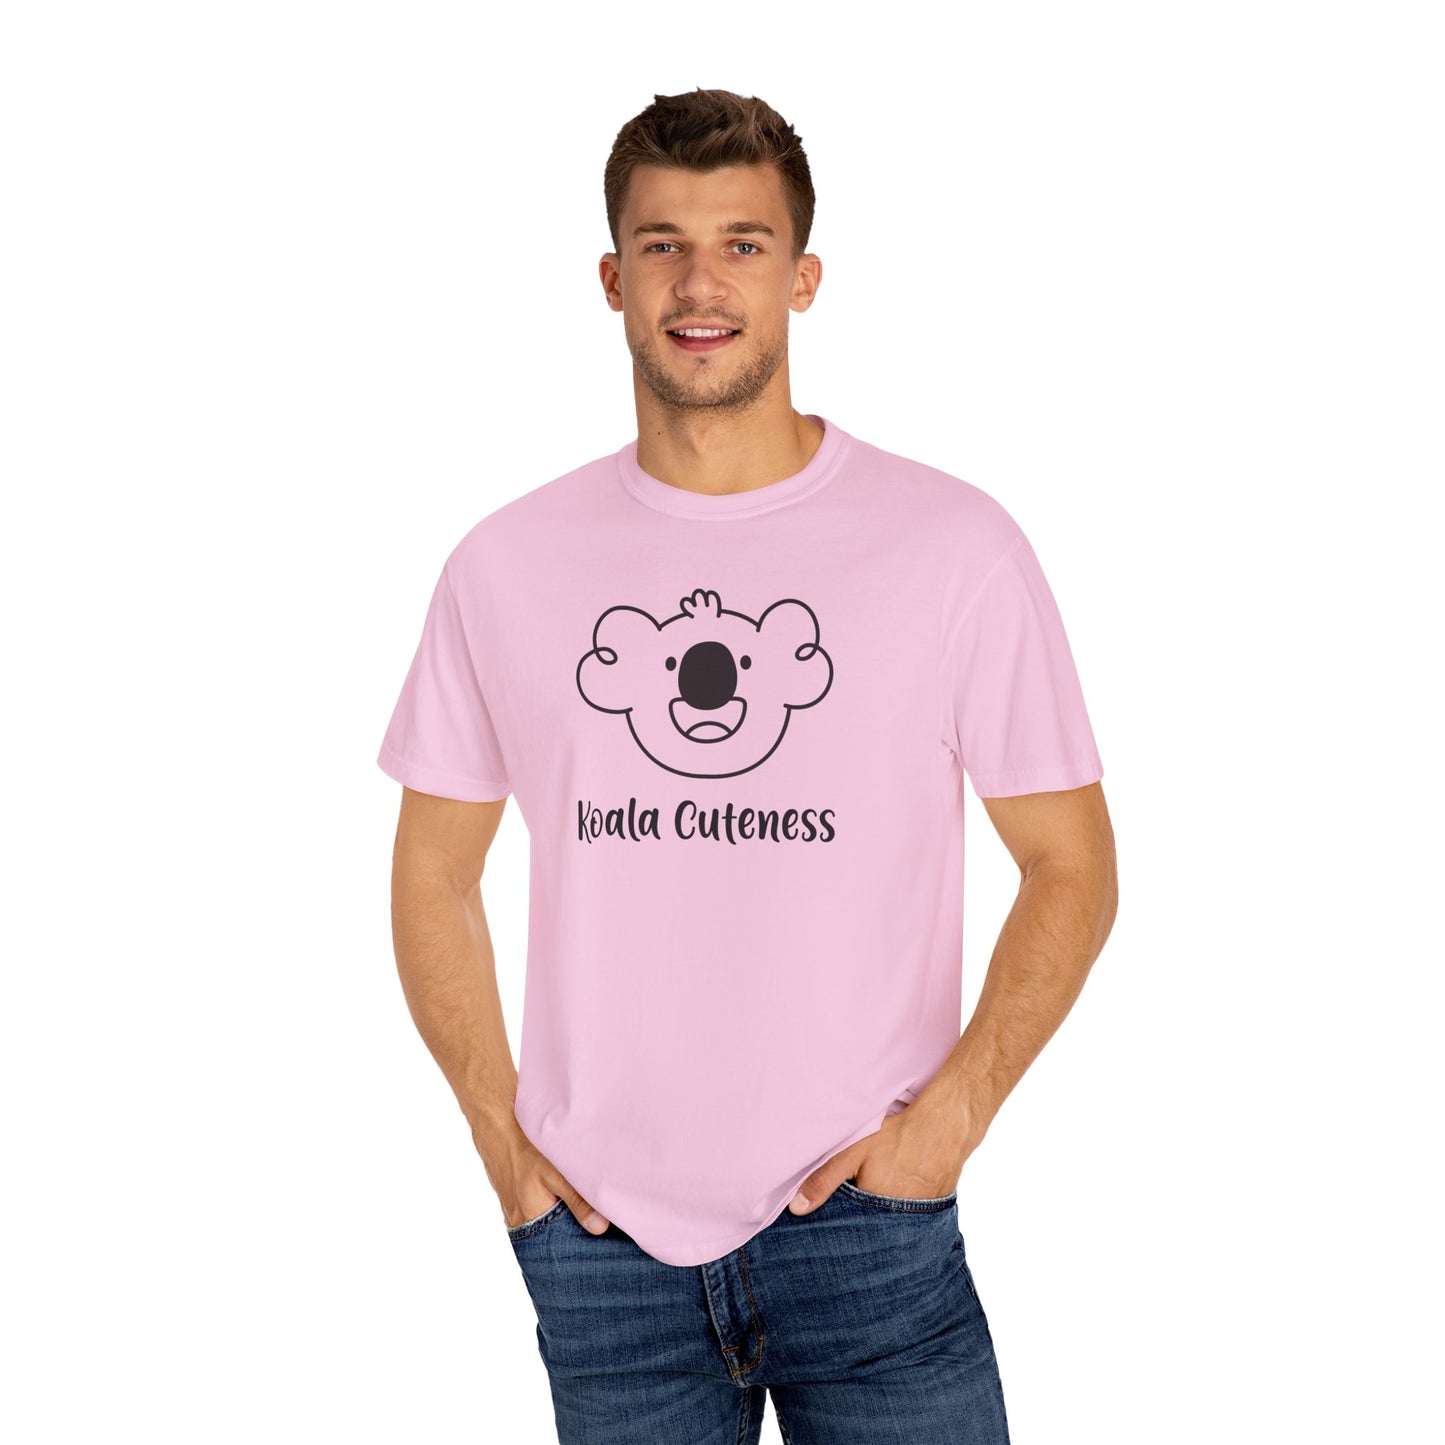 Tyler's Koala Cuteness T-shirt - Bright Colors